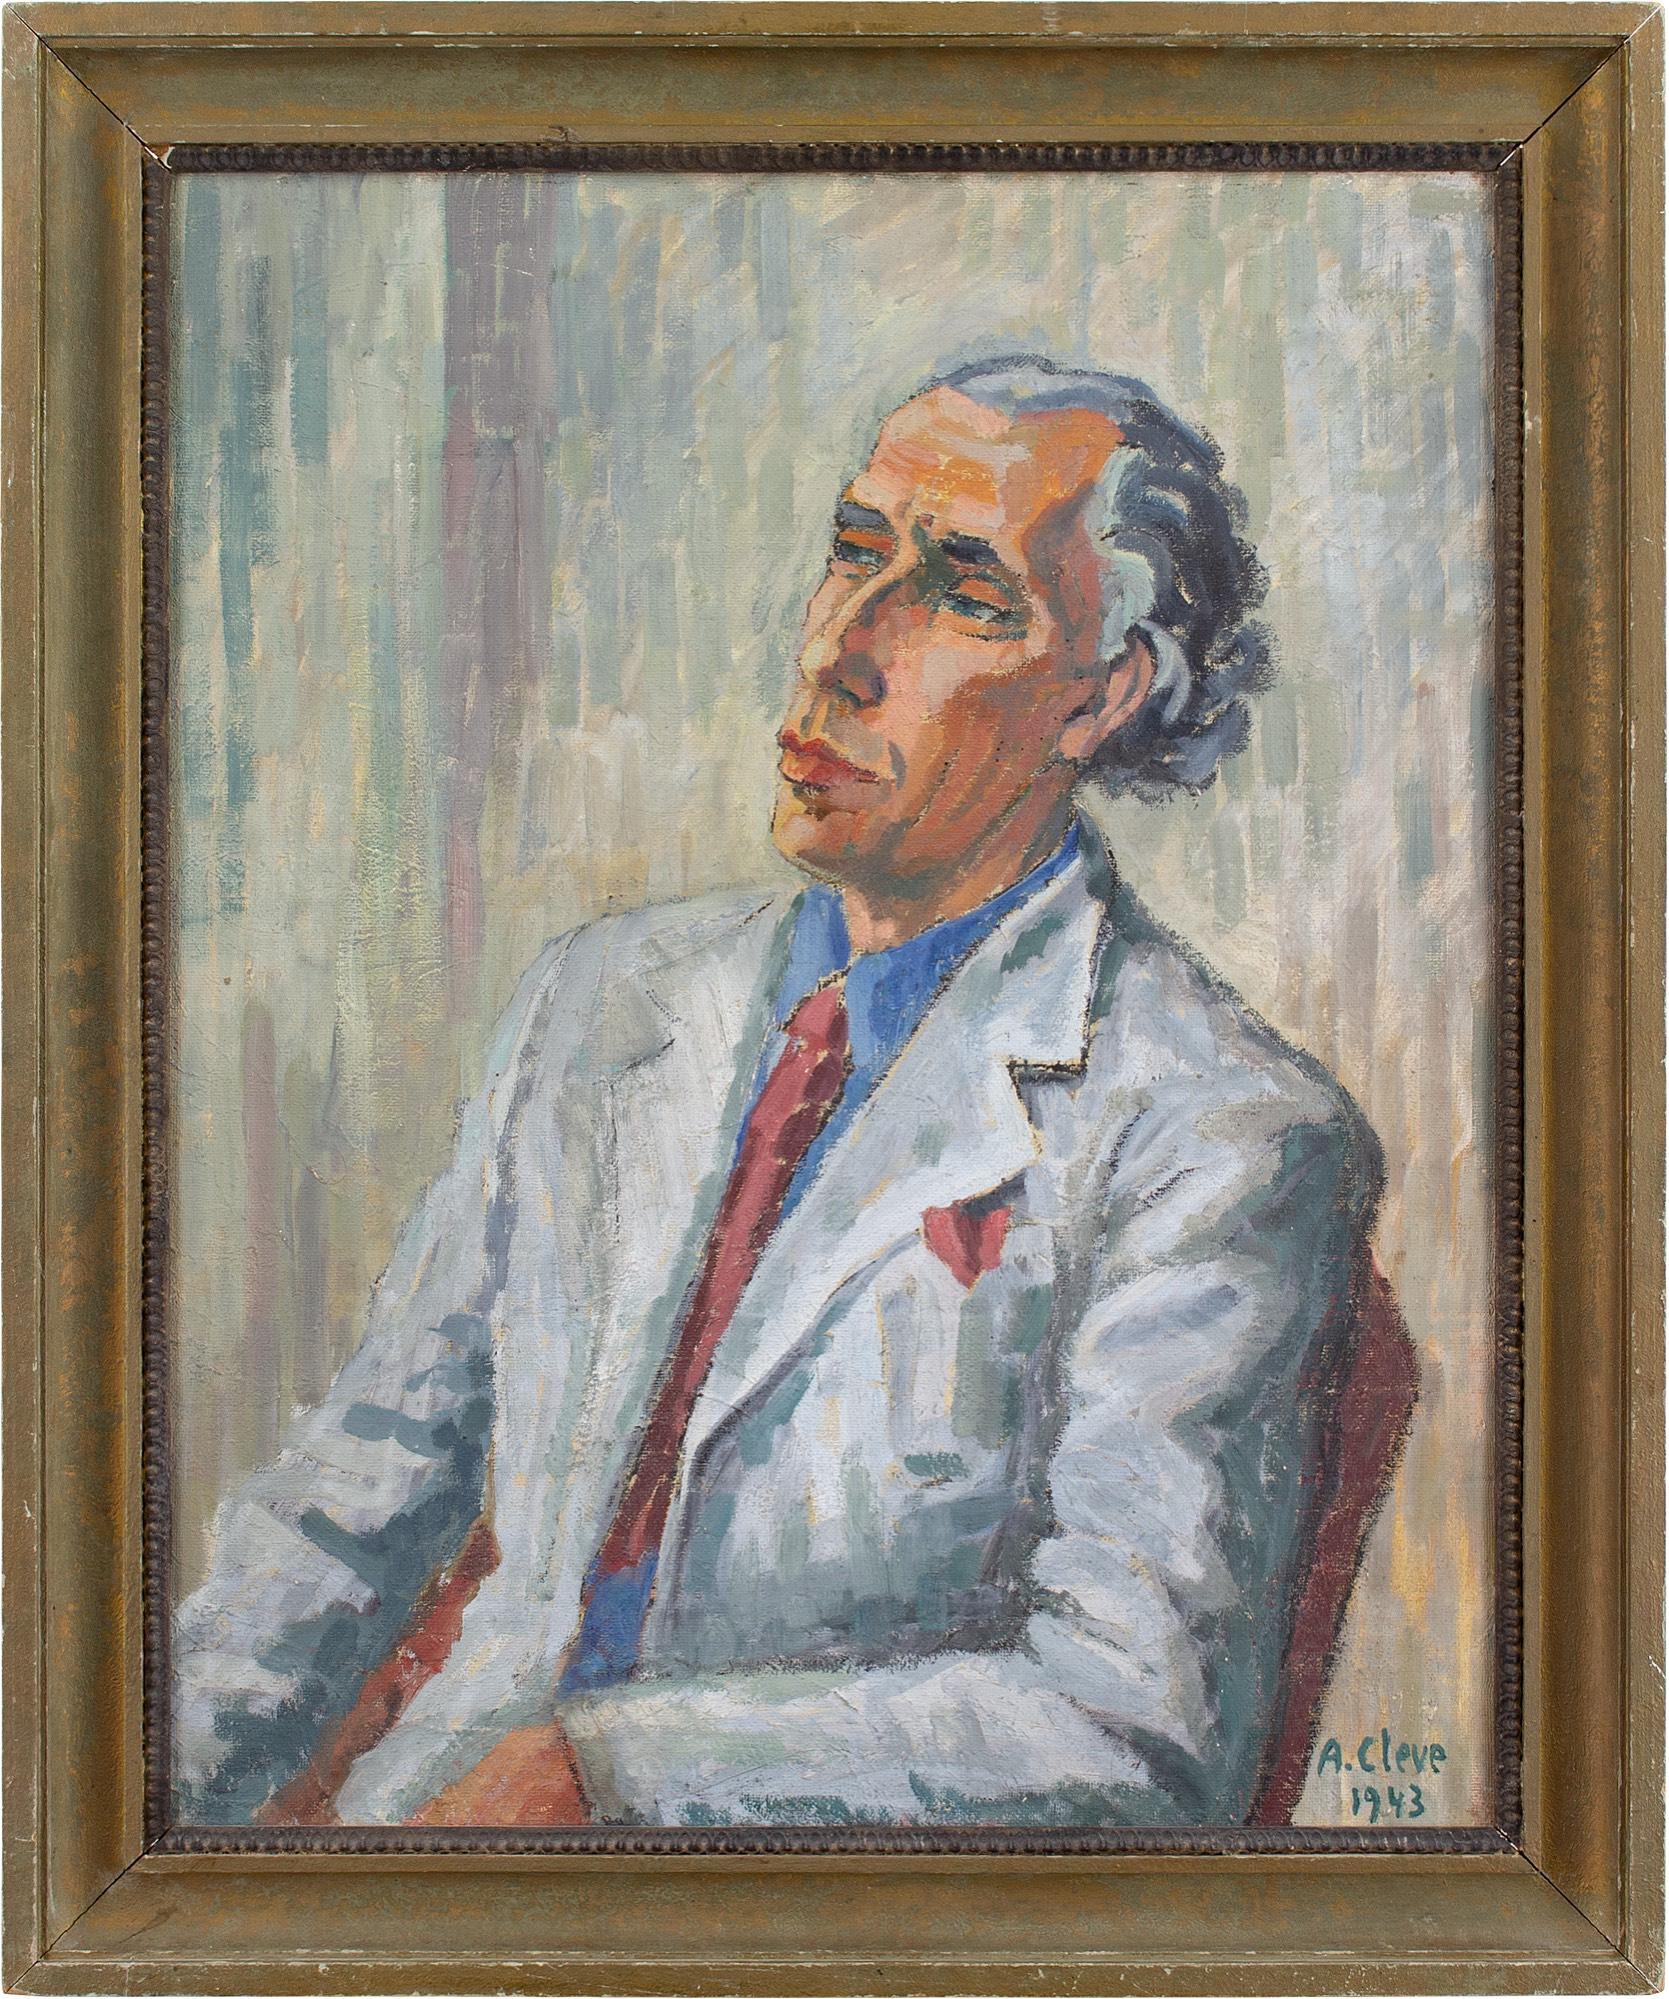 Dieses majestätische Porträt der schwedischen Künstlerin Agnes Cleve (1876-1951) zeigt Jan Bolinder in blauem Hemd, grauer Jacke und roter Krawatte. Er ist durchtrainiert und strahlt Selbstvertrauen aus.

Cleve war ein faszinierender Künstler und